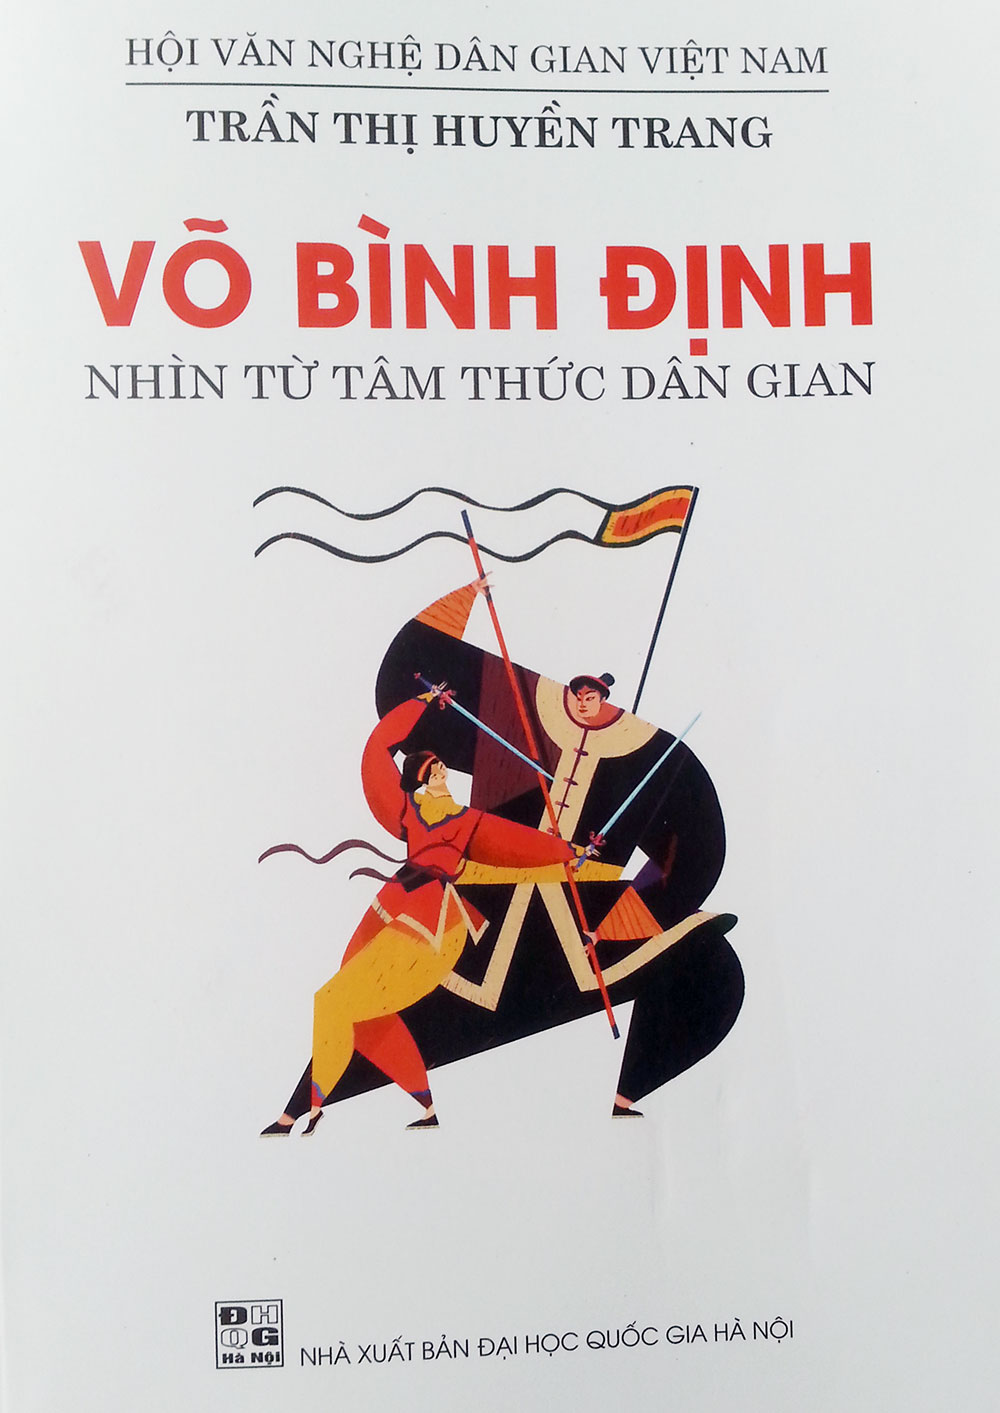 “Võ Bình Định, nhìn từ tâm thức dân gian”, cuốn sách mới nhất của Trần Thị Huyền Trang.